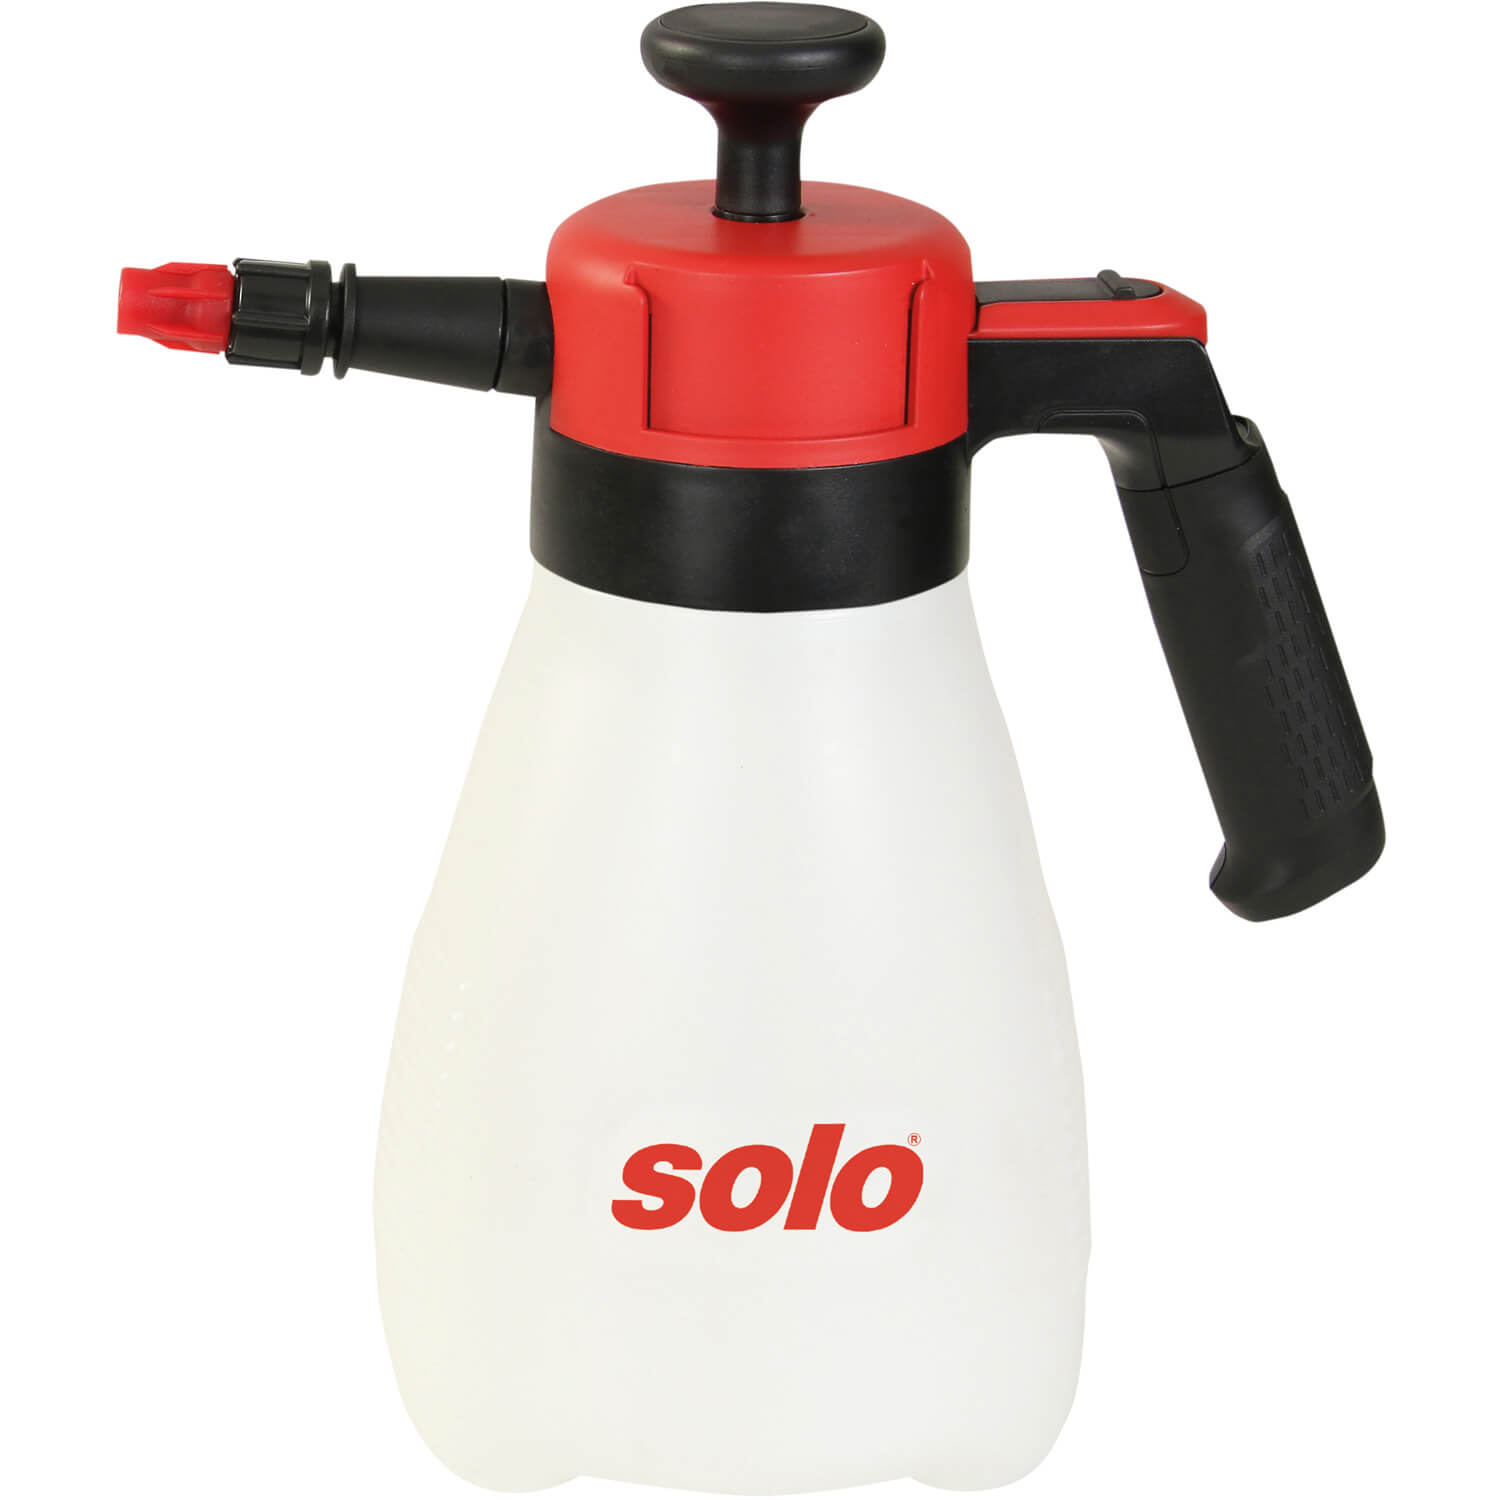 Обприскувач ручний SOLO, 1.25 л, поршневий, тиск 3 бар, вага 0.45 кг | solo 201